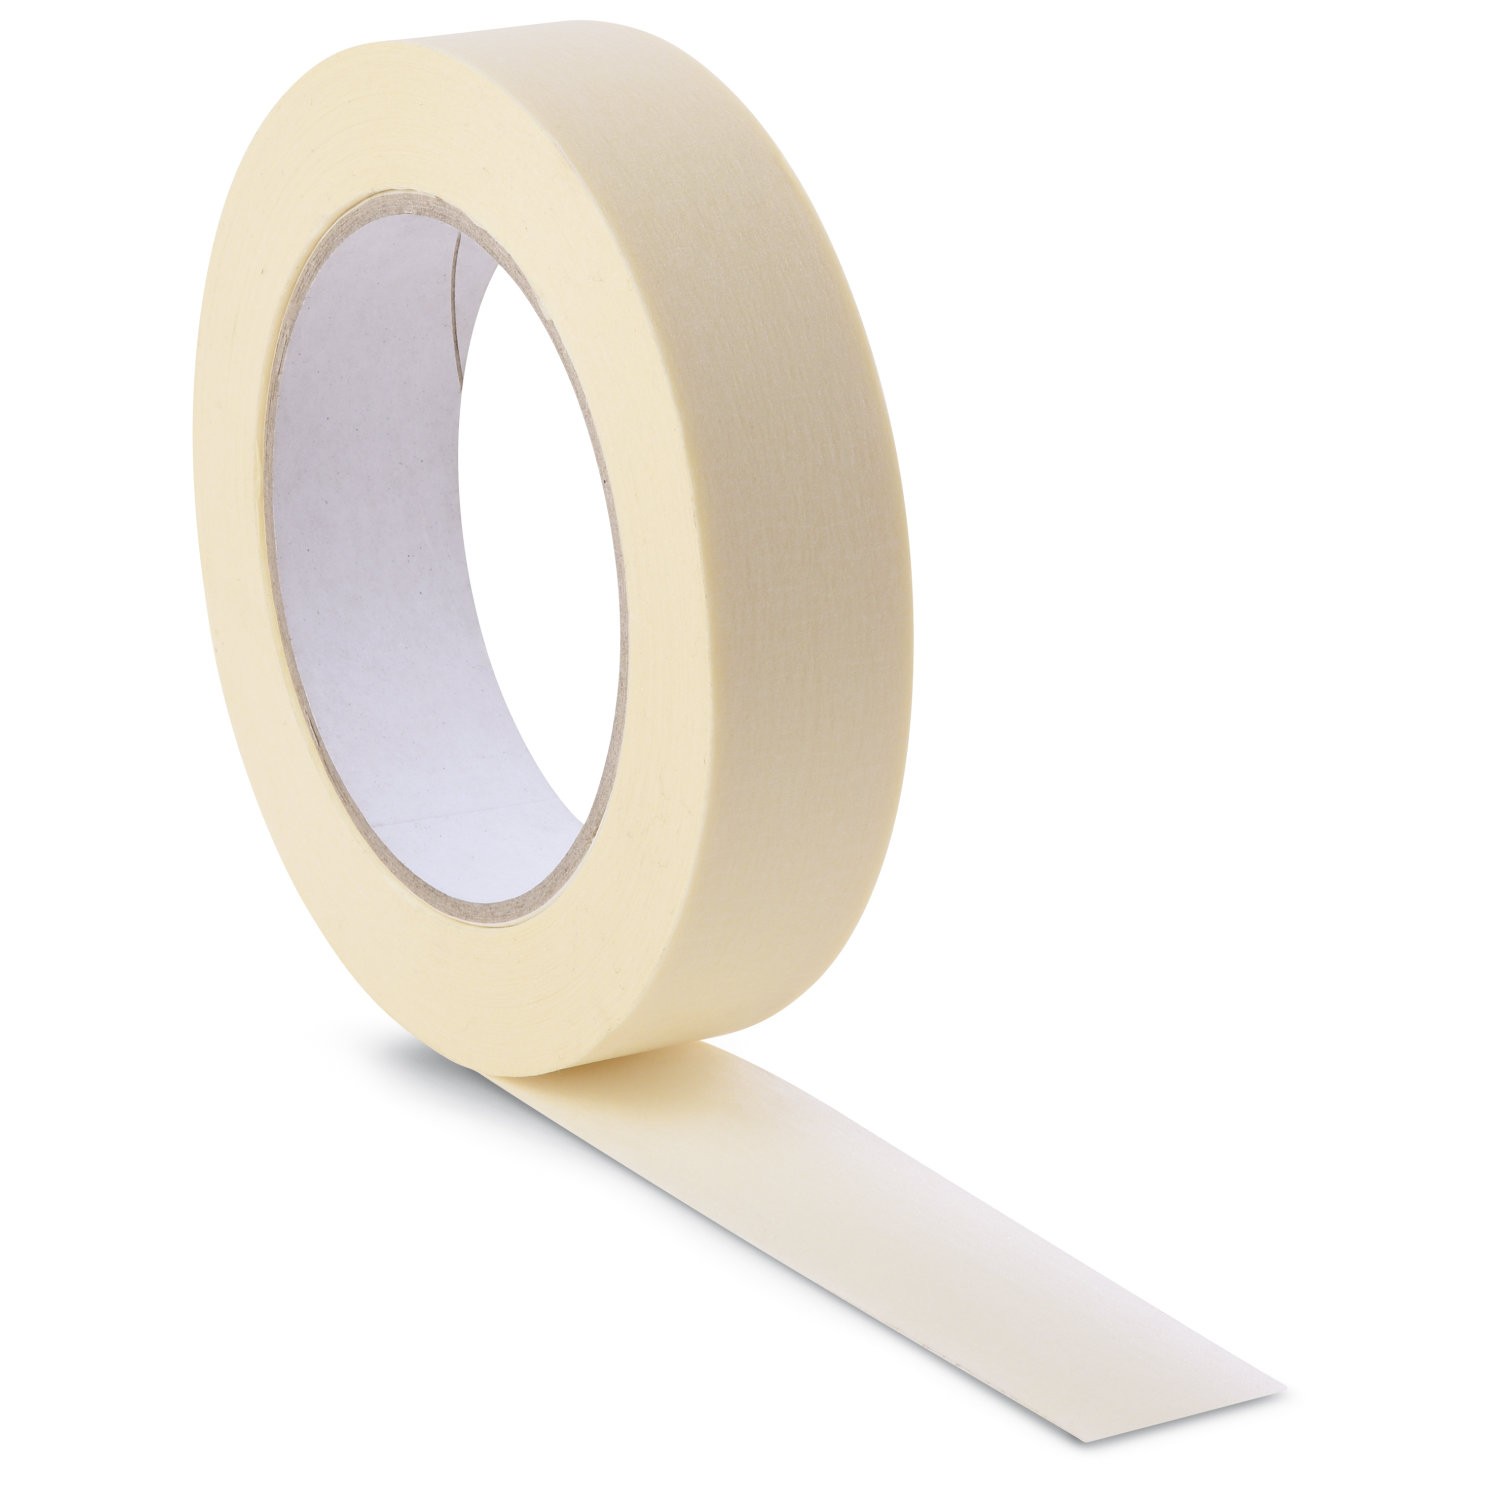 Paper Masking Tape 24mm x 50m - Robert McCabe Packaging